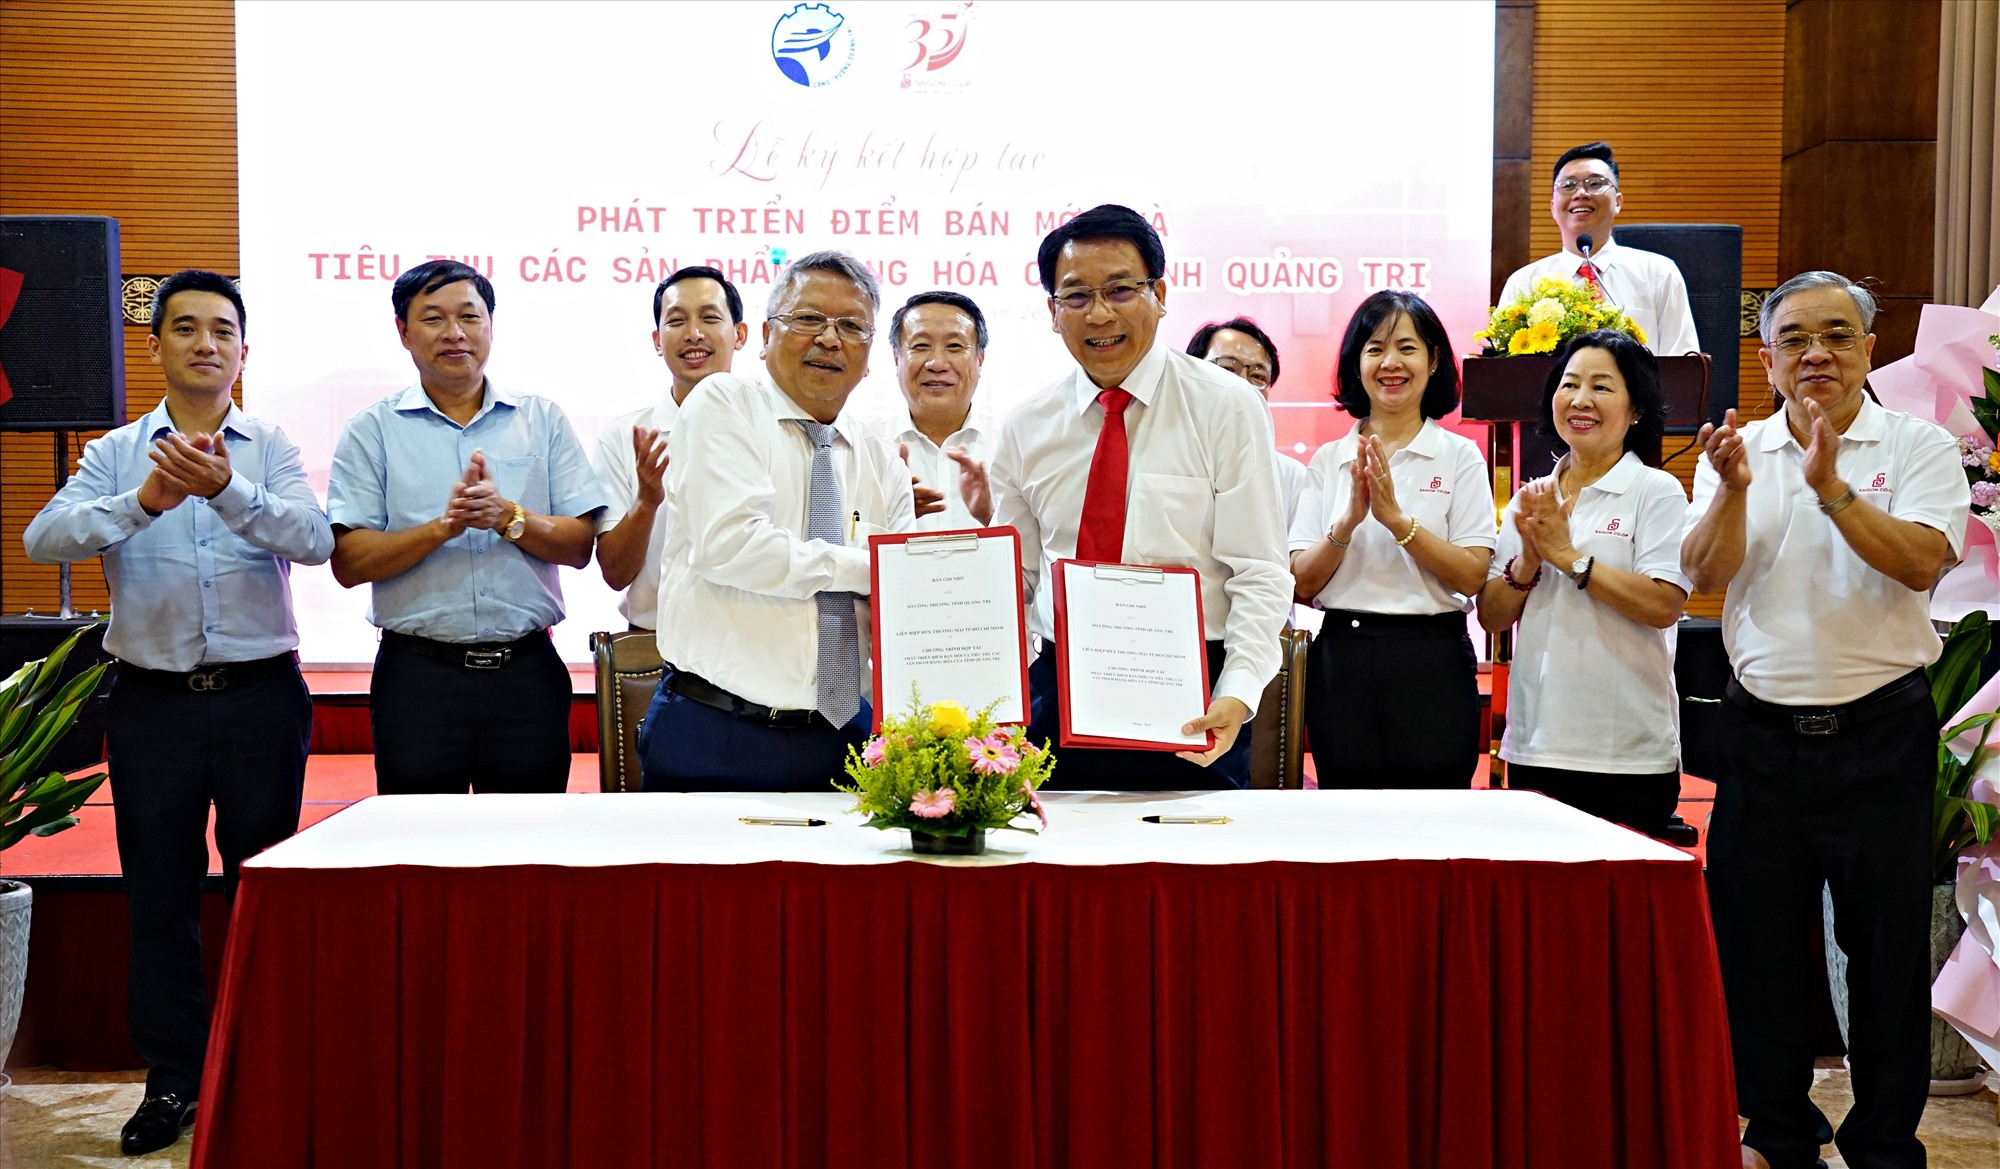 Đại diện lãnh đạo Sở Công thương và Saigon Co.op ký kết bản ghi nhớ chương trình hợp tác nghiên cứu phát triển các điểm bán mới và tiêu thụ các sản phẩm hàng hóa của tỉnh - Ảnh: L.A